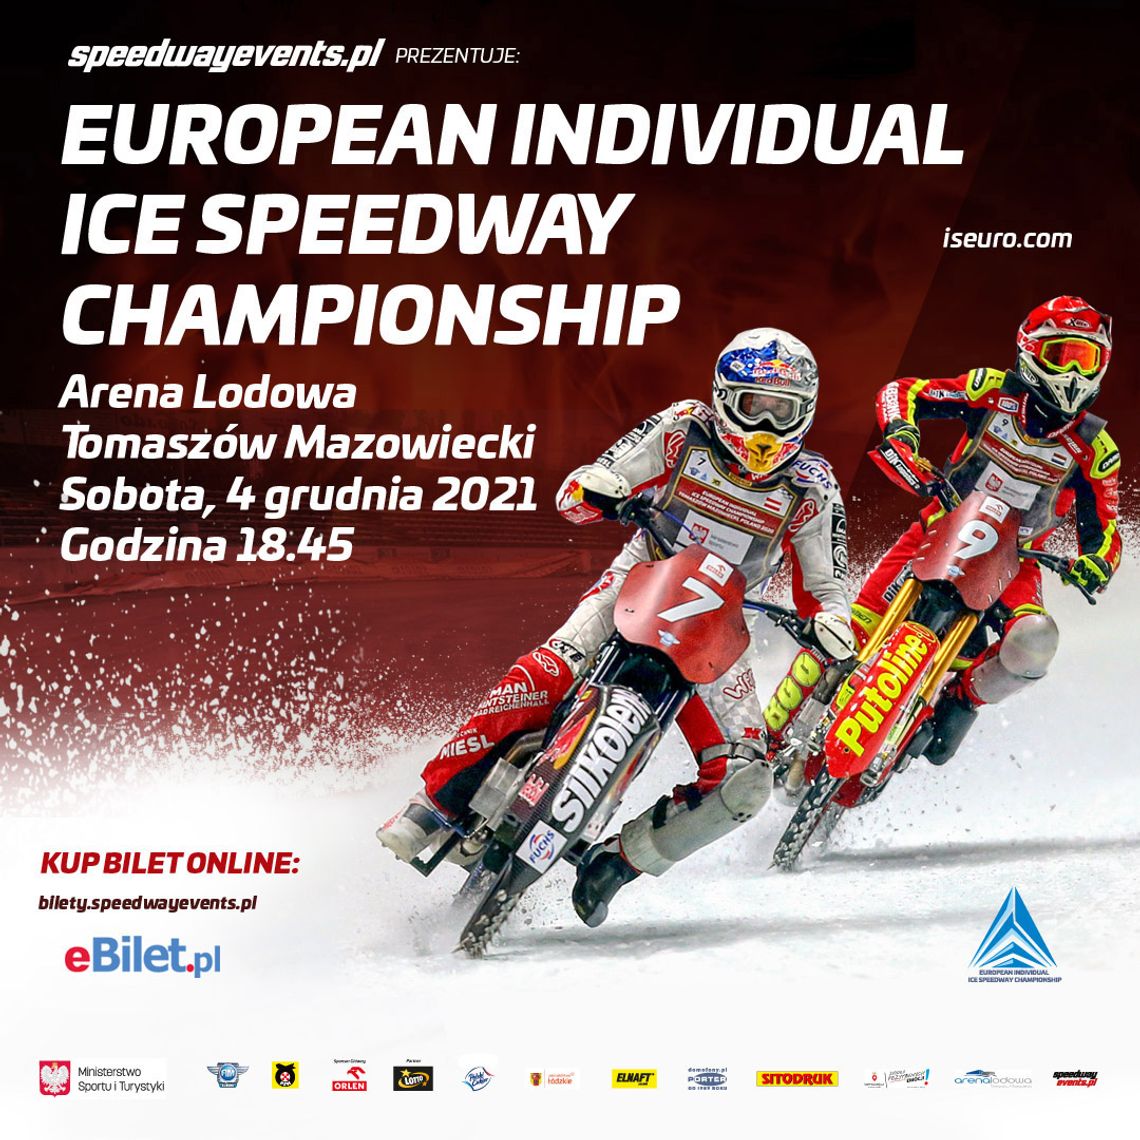 Poznaliśmy nazwiska 16 uczestników  European Individual Ice Speedway Championship